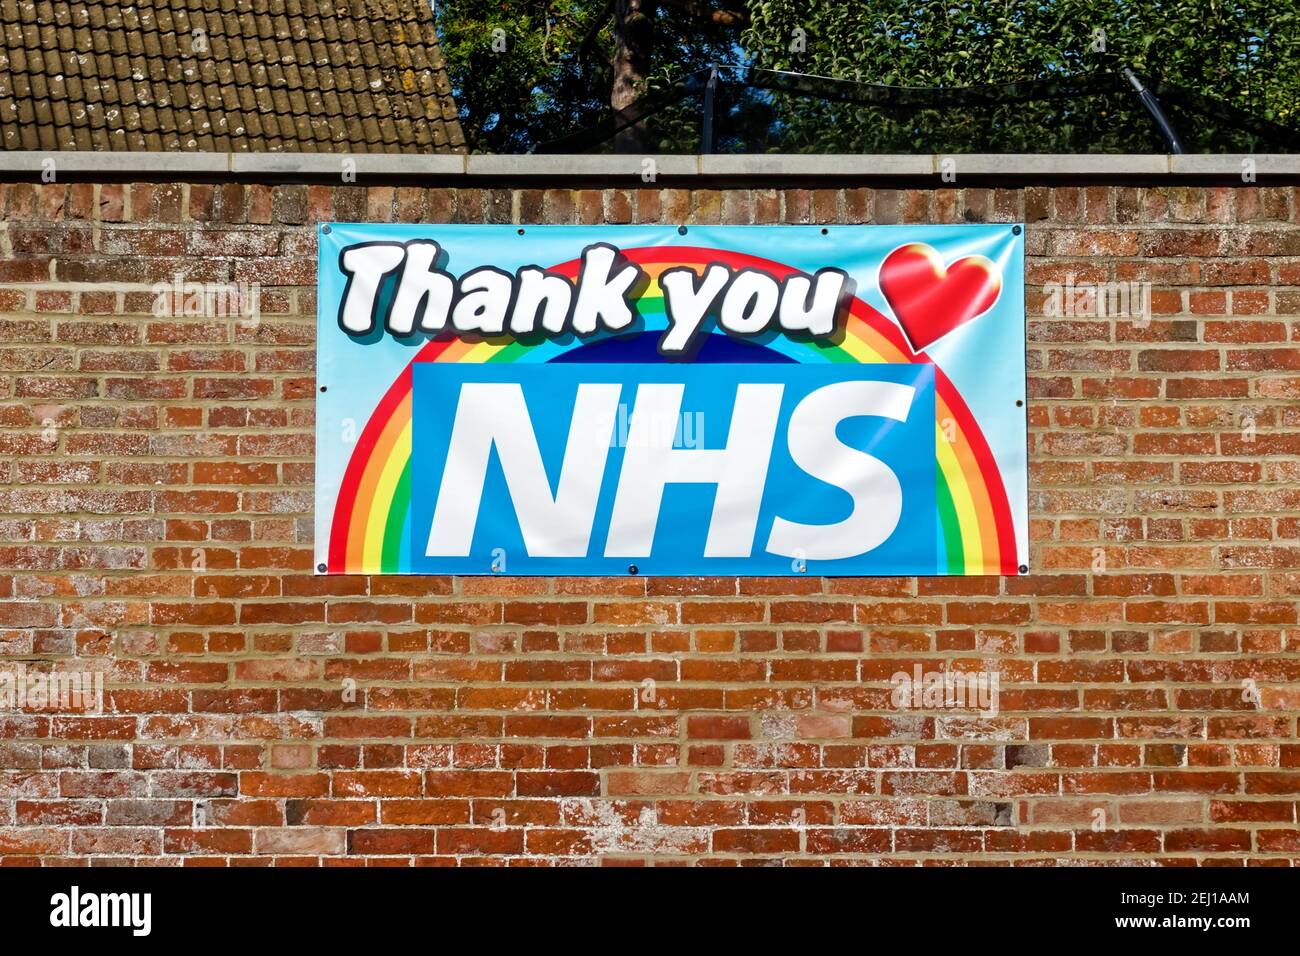 Warminster, Wiltshire / Reino Unido - September13 2020: Un colorido Gracias NHS Arcoiris de la esperanza pancarta adjunta a una pared de ladrillo Foto de stock